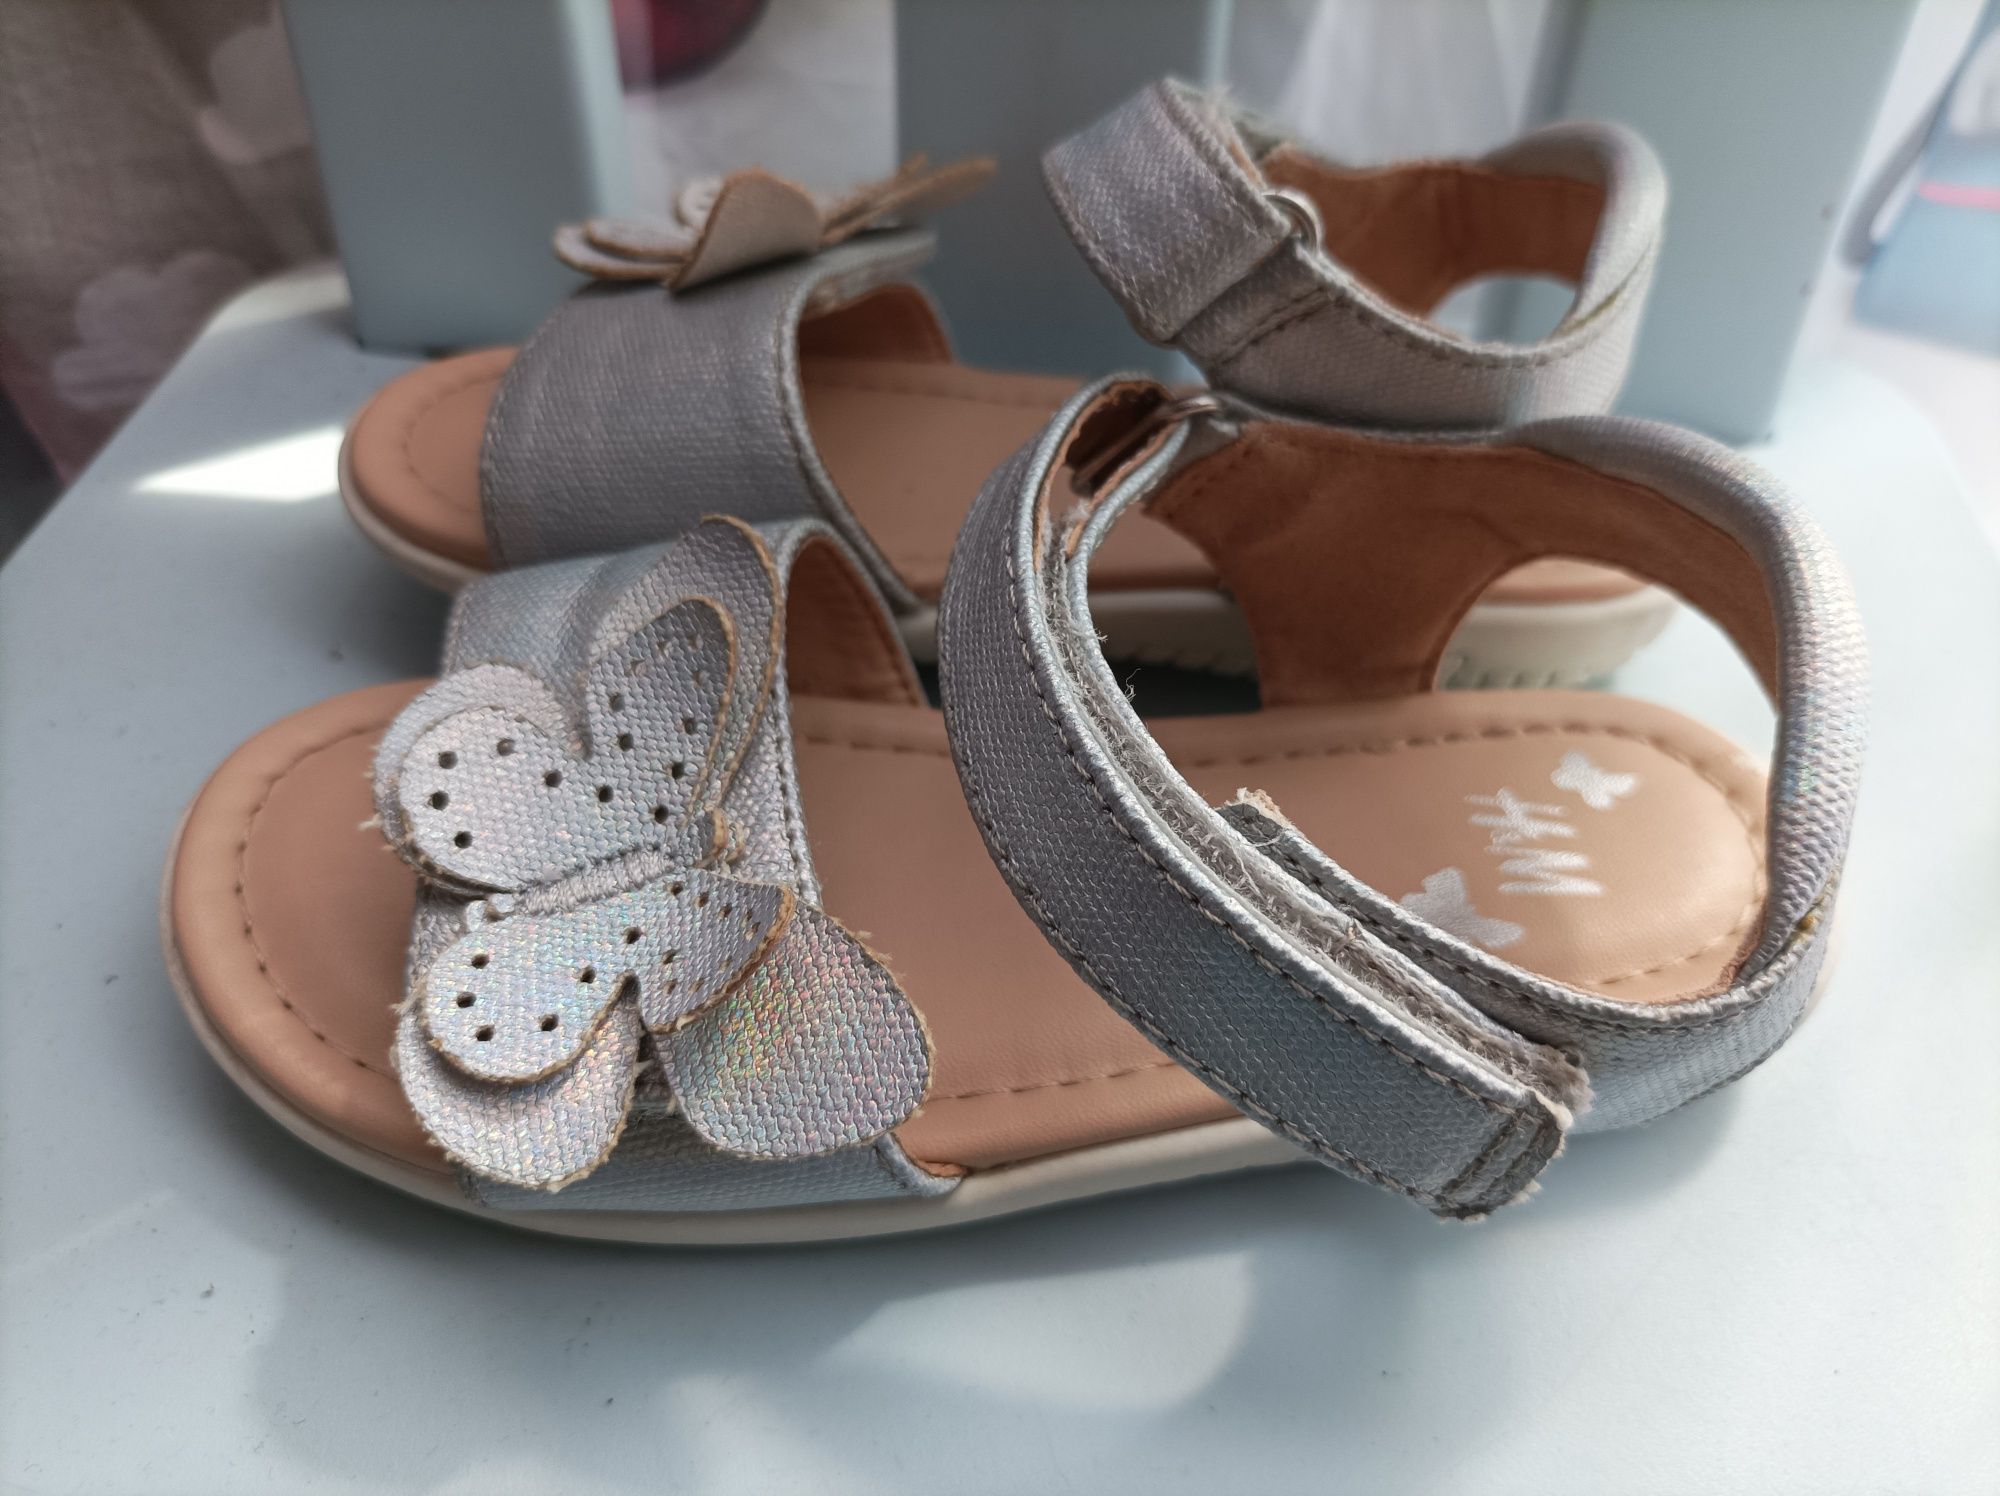 Sandałki H&M roz 27 srebrne z motylem, rzepki